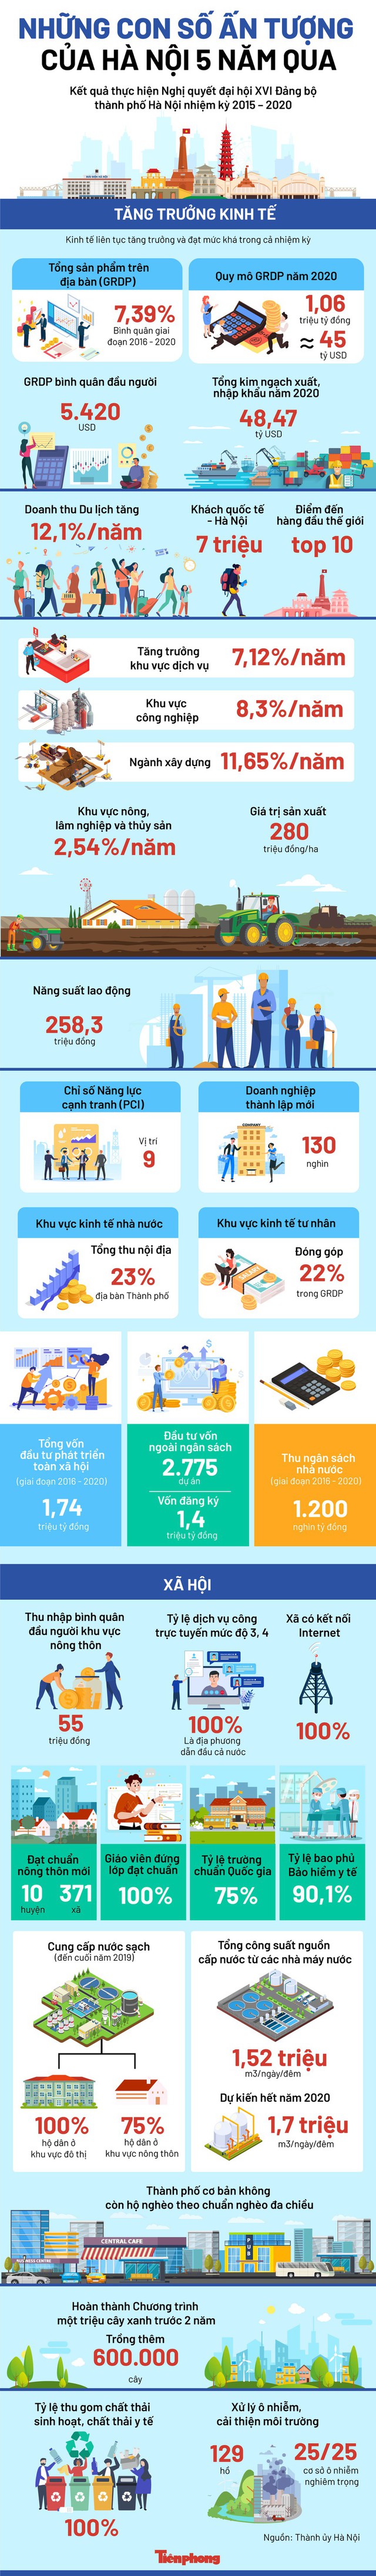 Những con số ấn tượng của Hà Nội trong 5 năm qua - Ảnh 1.